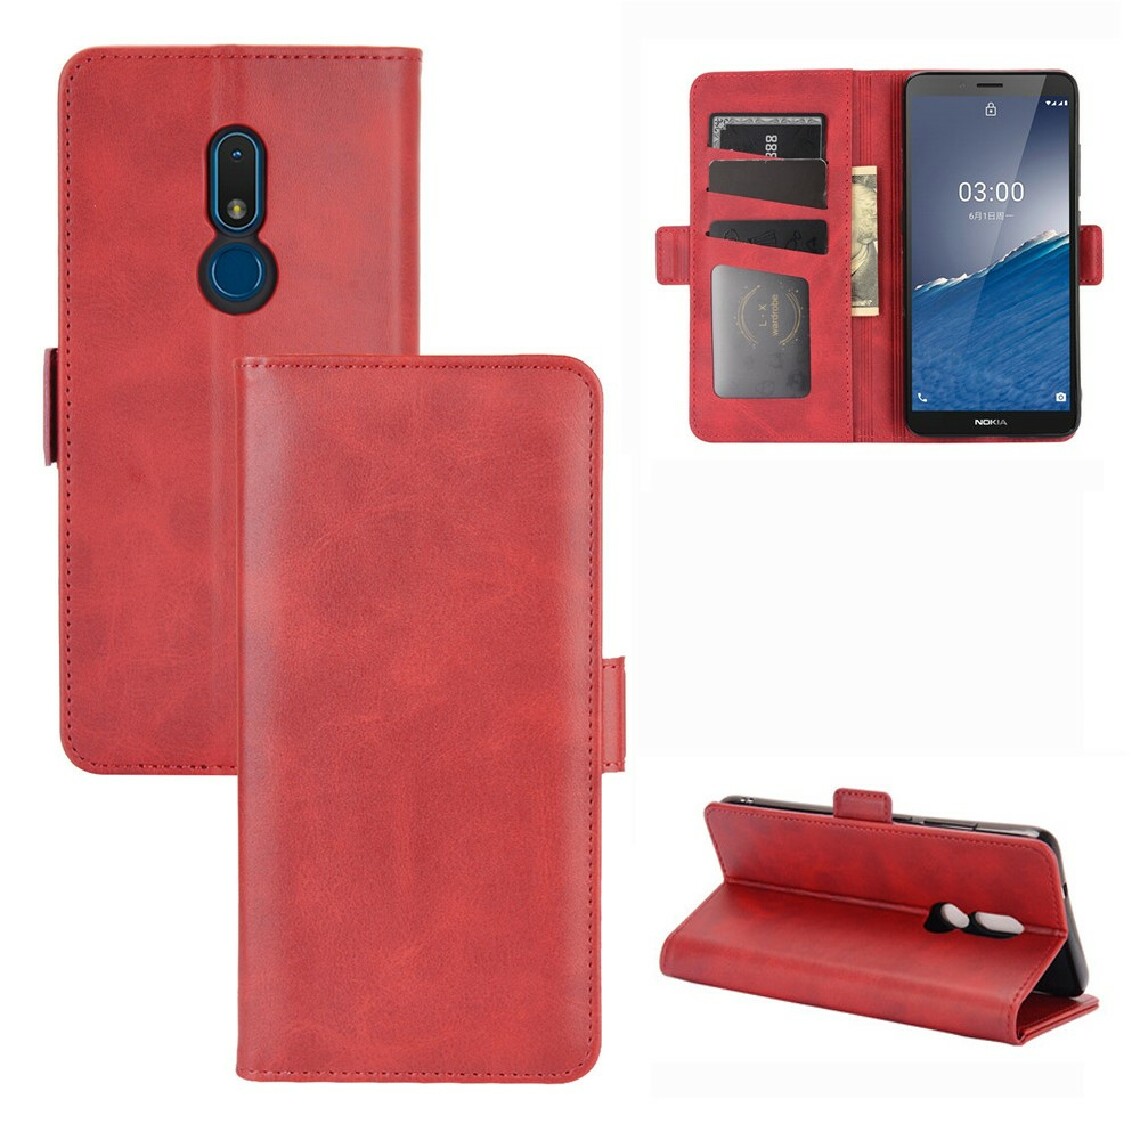 Other - Etui en PU double fermoir magnétique avec support rouge pour votre Nokia C3 - Coque, étui smartphone